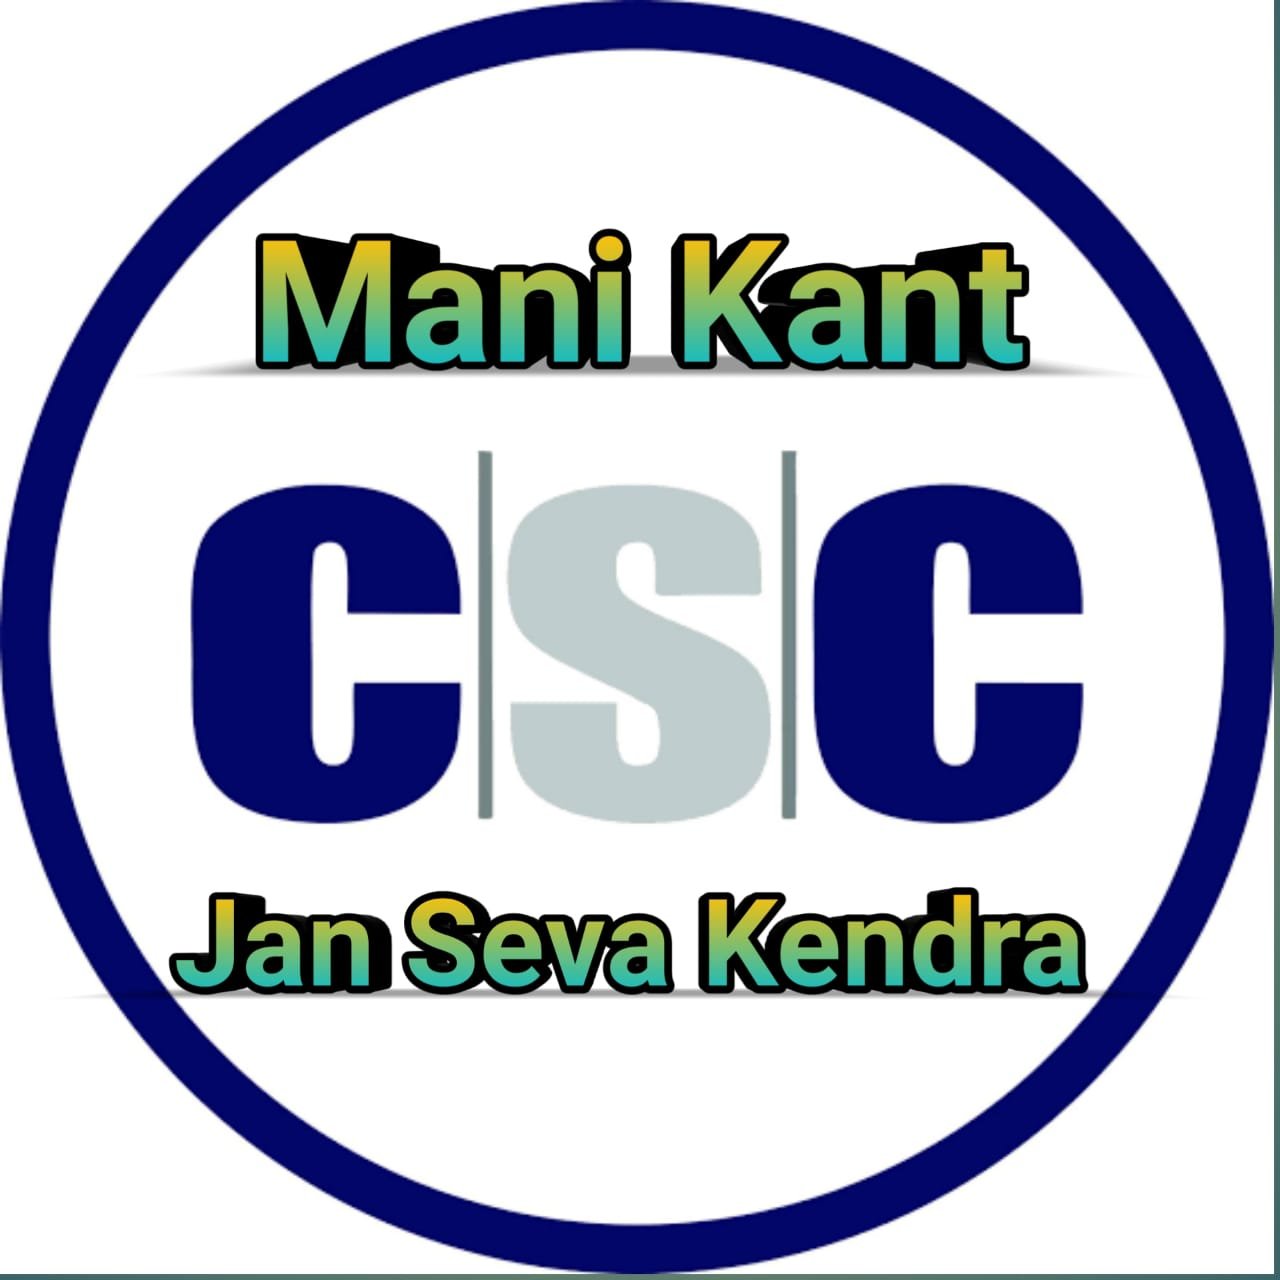 CSC Noida | Jan Seva Kendra Noida